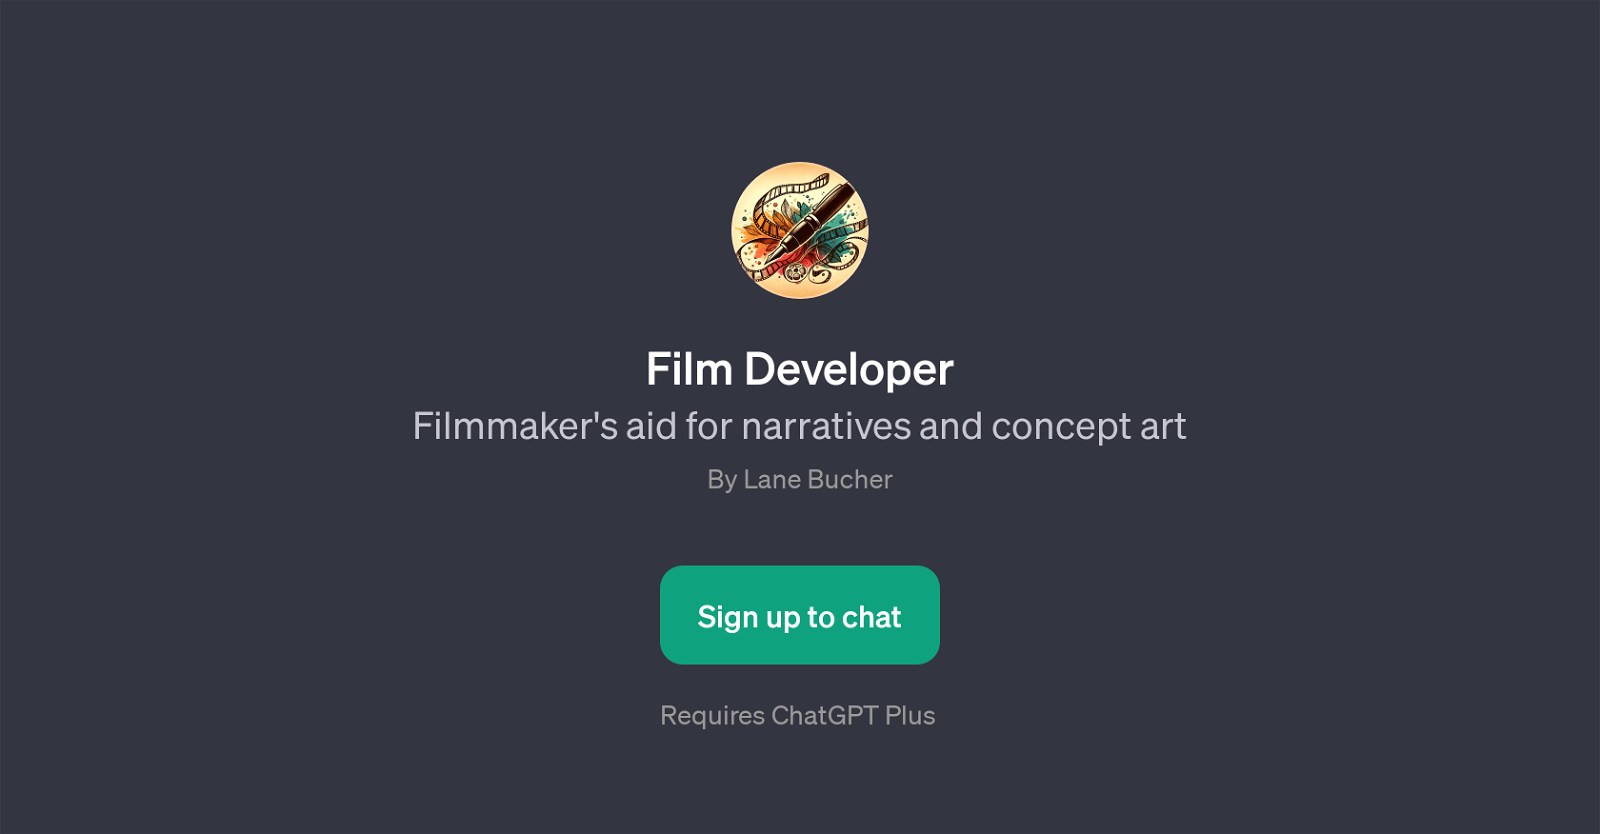 Film Developer website